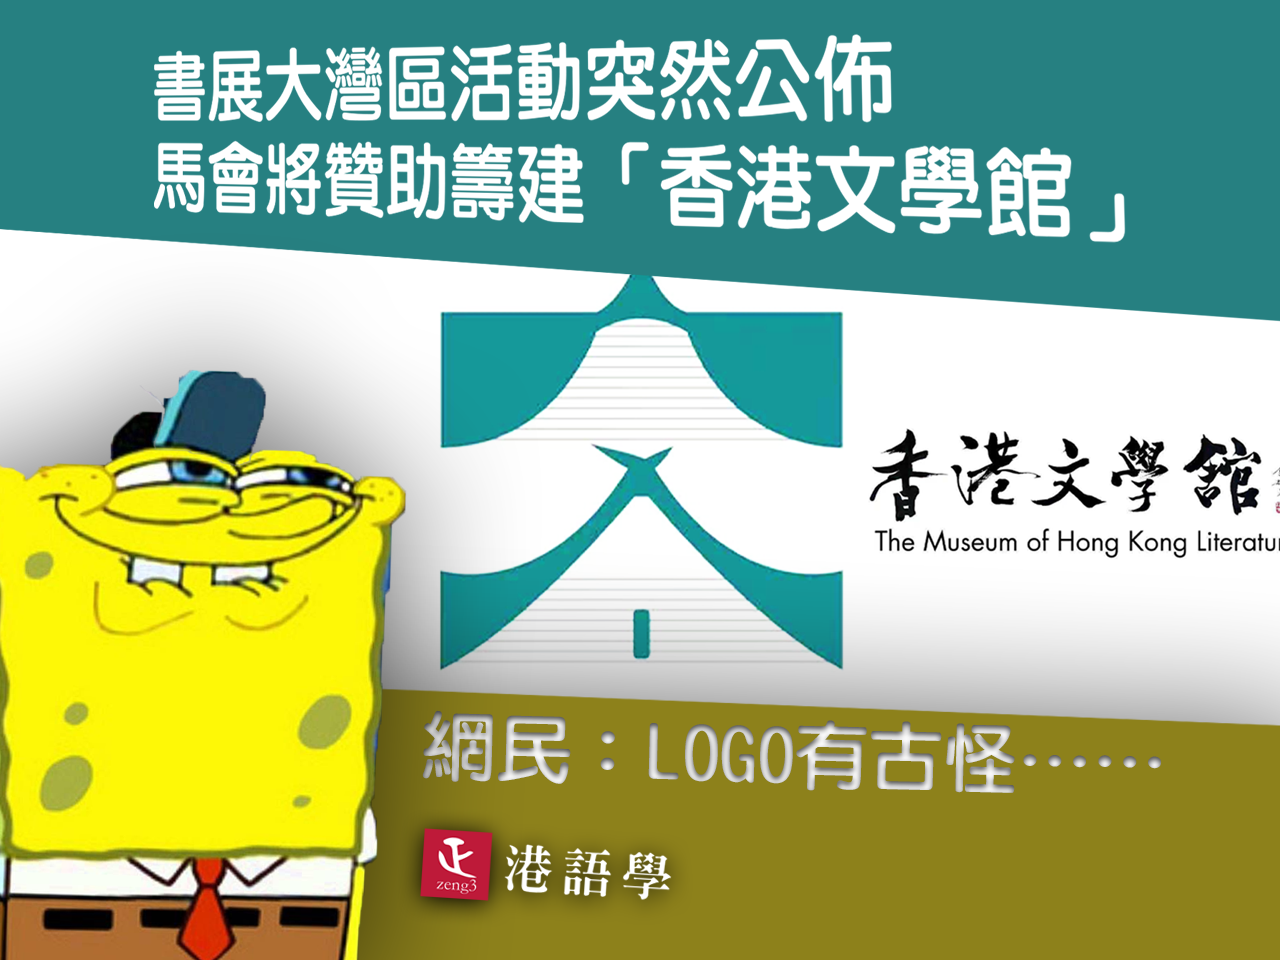 書展活動公佈香港文學館明年開幕 網民：Logo好似有啲不雅……